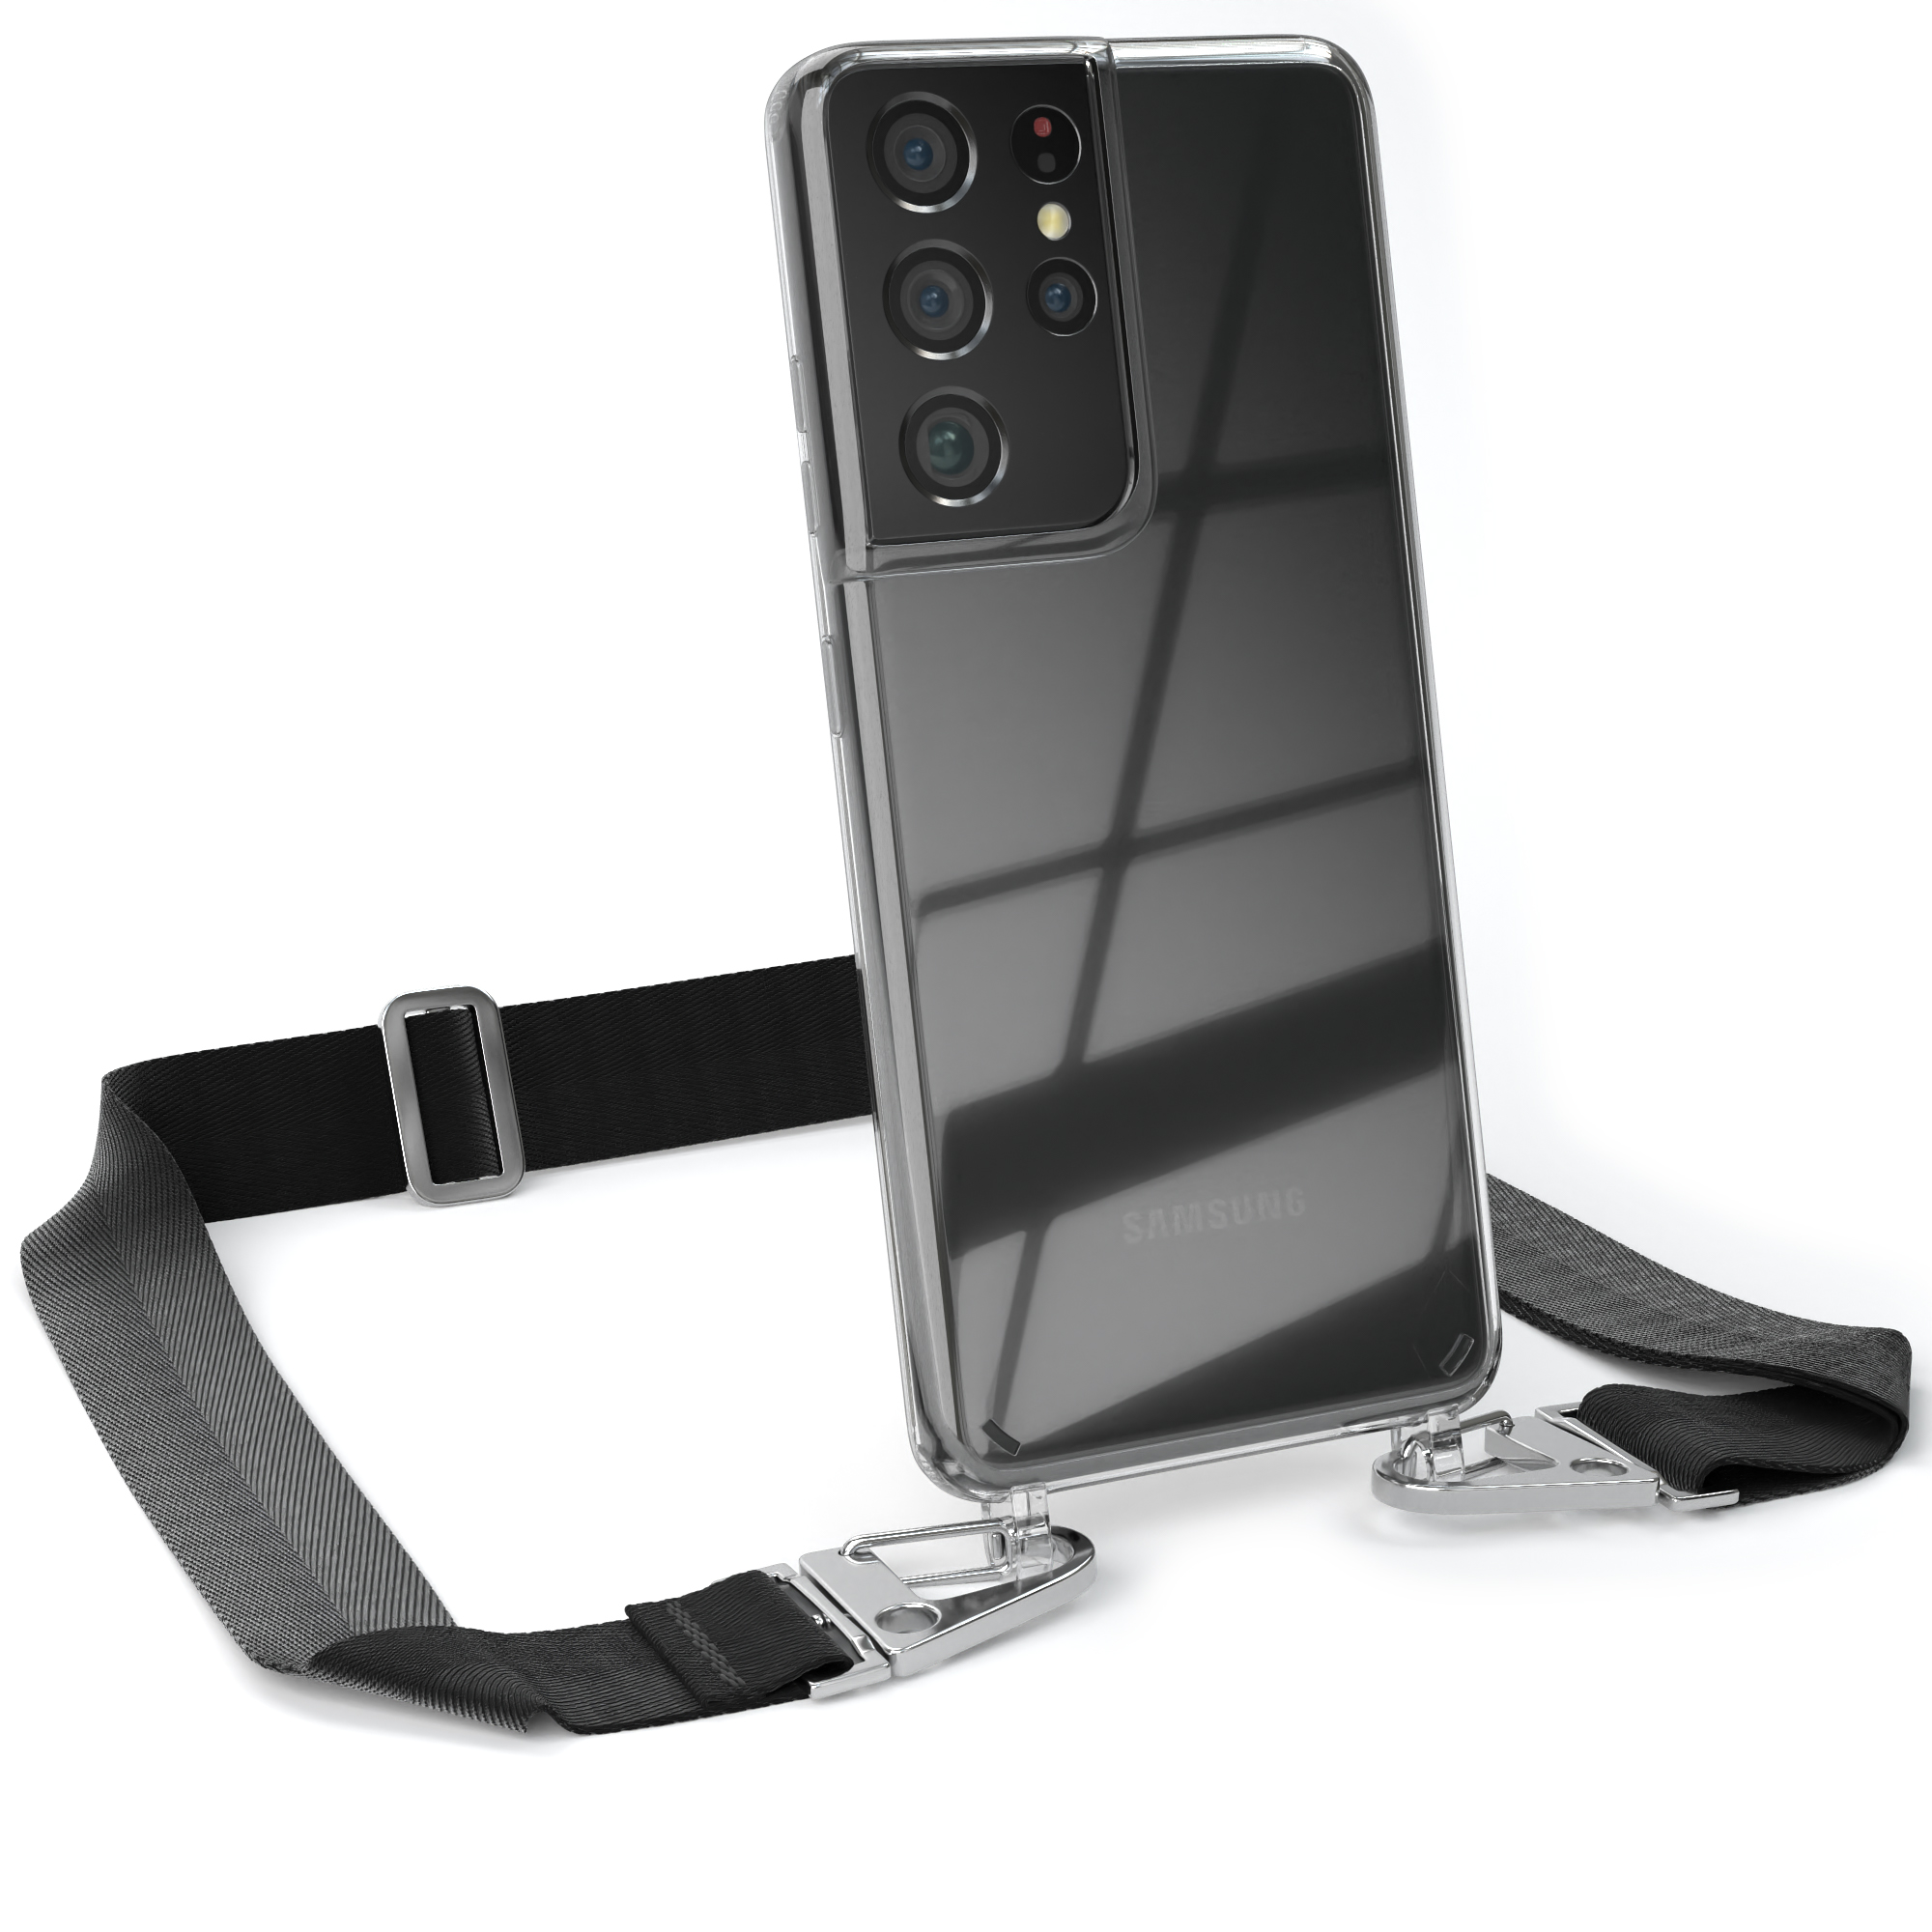 EAZY CASE Transparente Handyhülle mit Karabiner, breiter Schwarz Galaxy Samsung, Silber / Ultra + Kordel 5G, Umhängetasche, S21